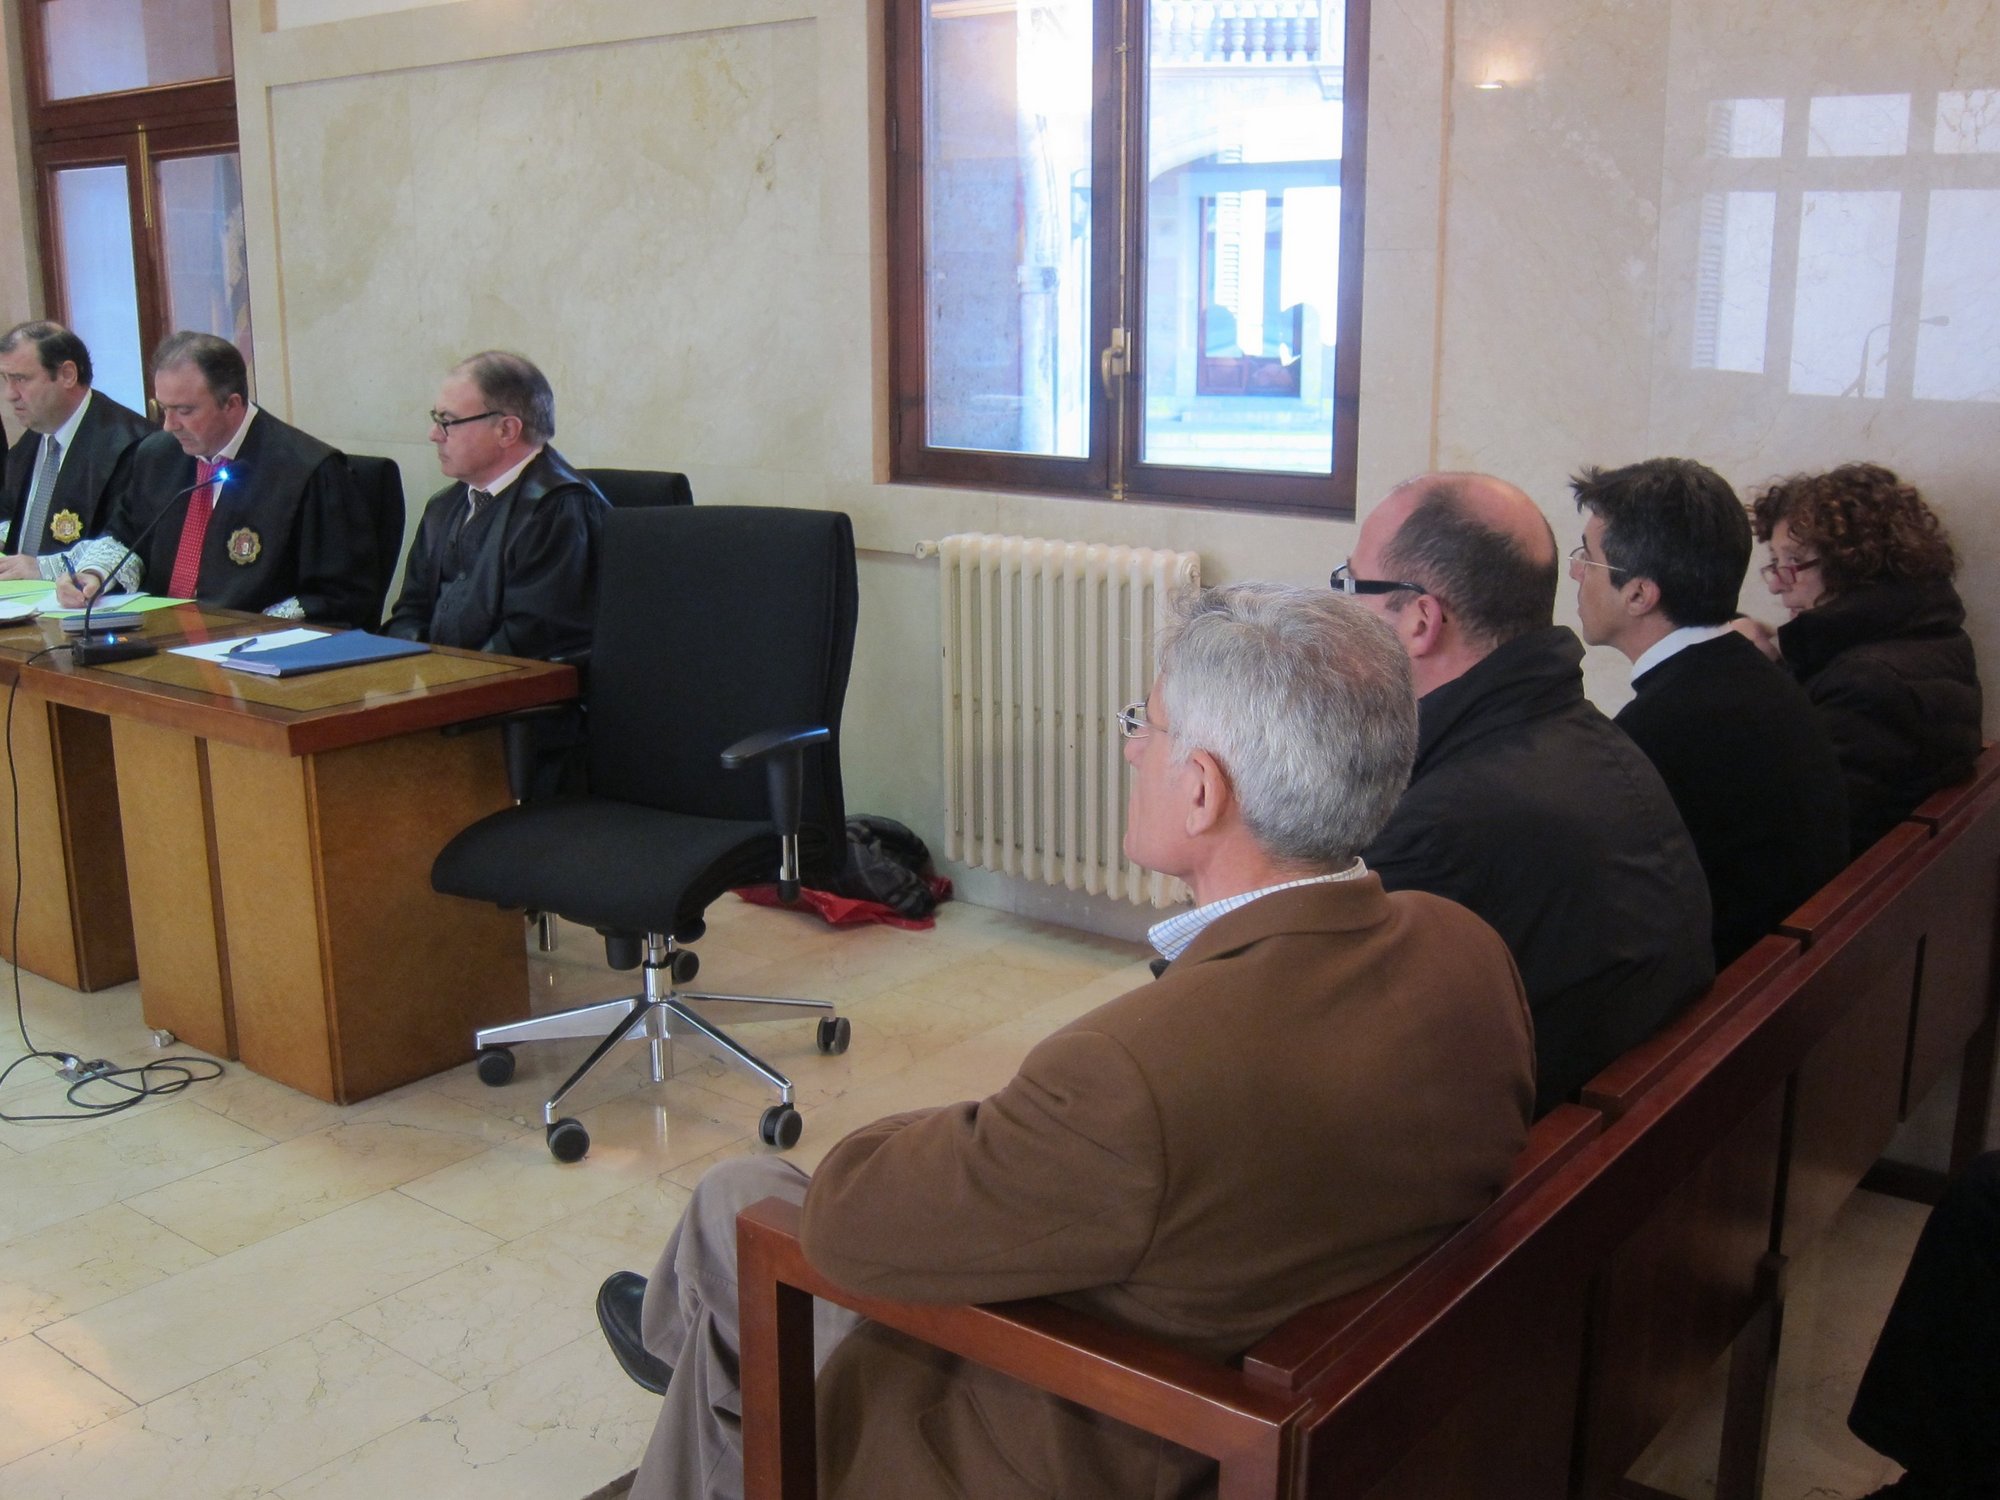 Fiscalía rebaja a 3 años su petición de cárcel para Vicens por desviar 12.000 euros en favor de sus testaferros